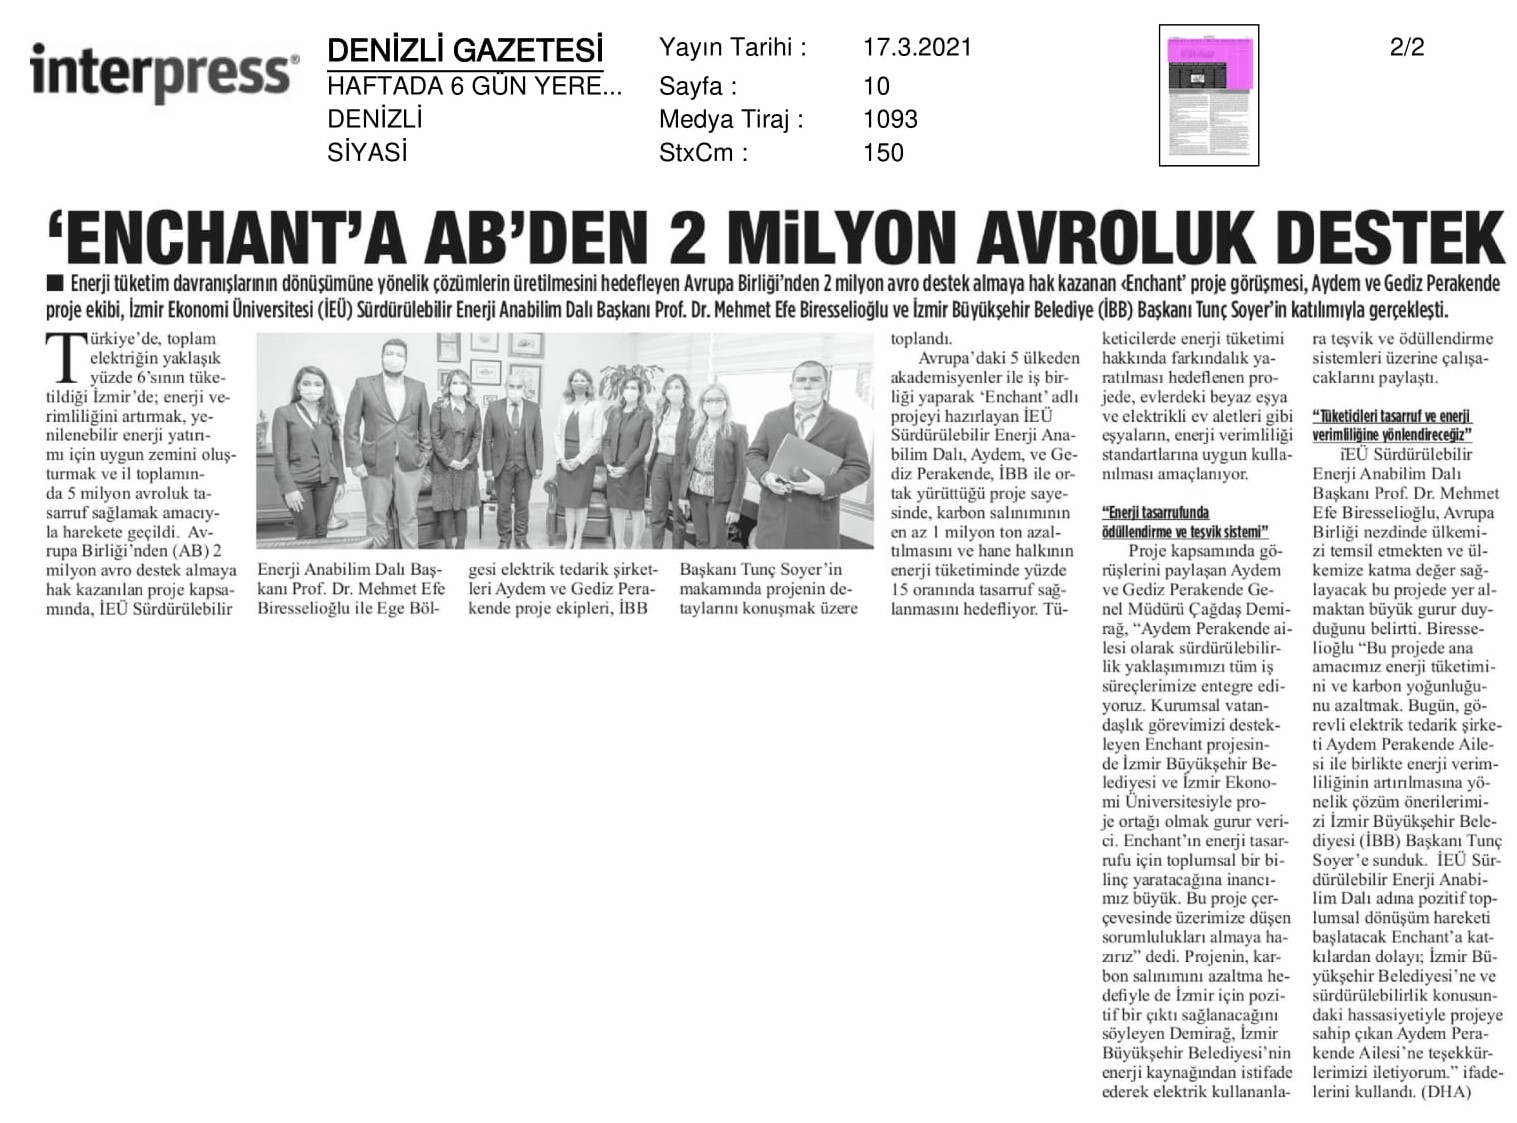 İzmir'de '44 milyon liralık' tasarruf projesi